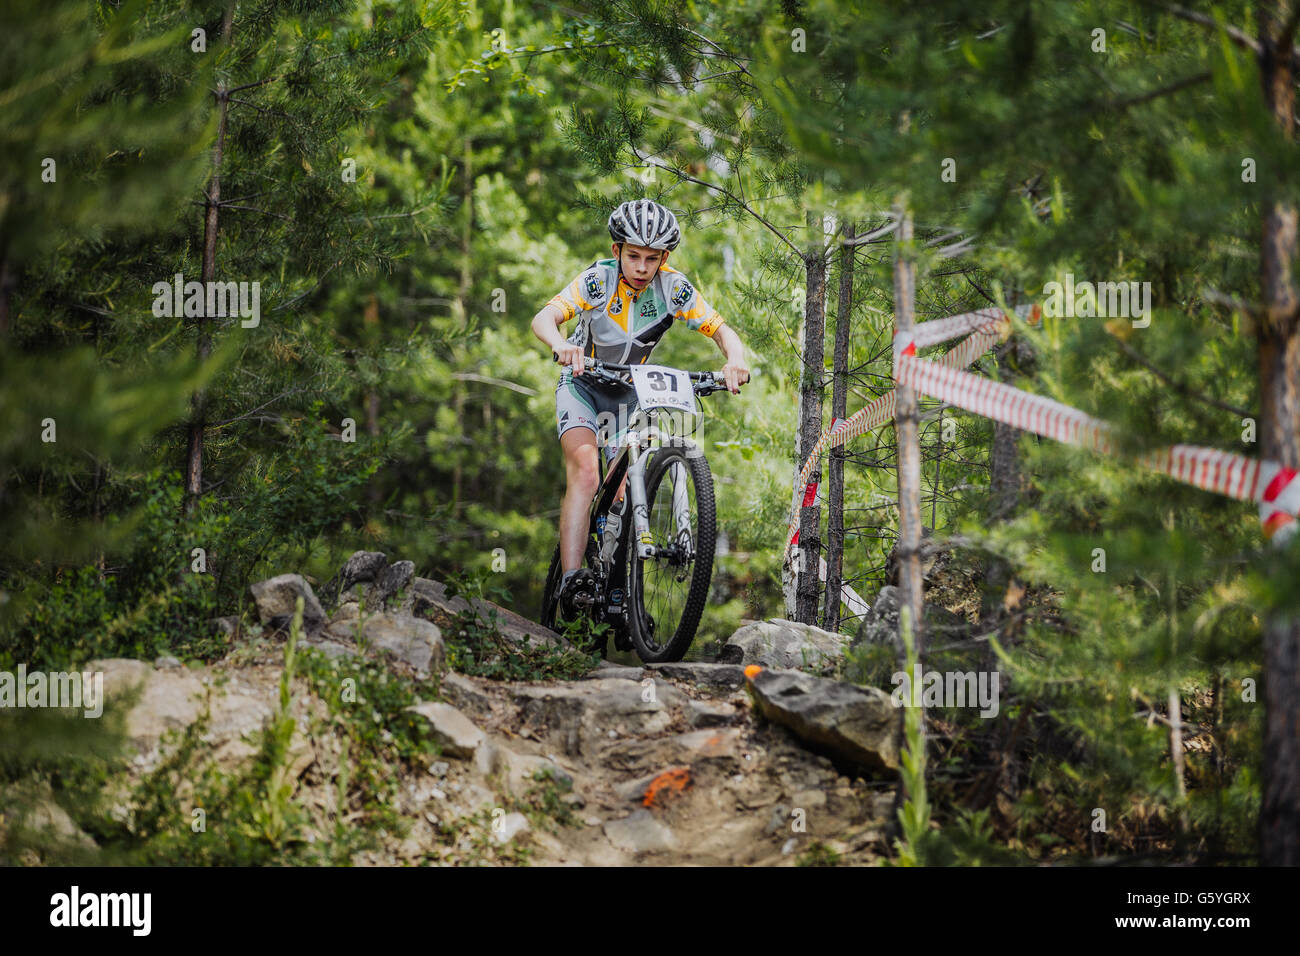 Giovane atleta cavalca una bicicletta sulle rocce nel bosco di abete rosso Foto Stock